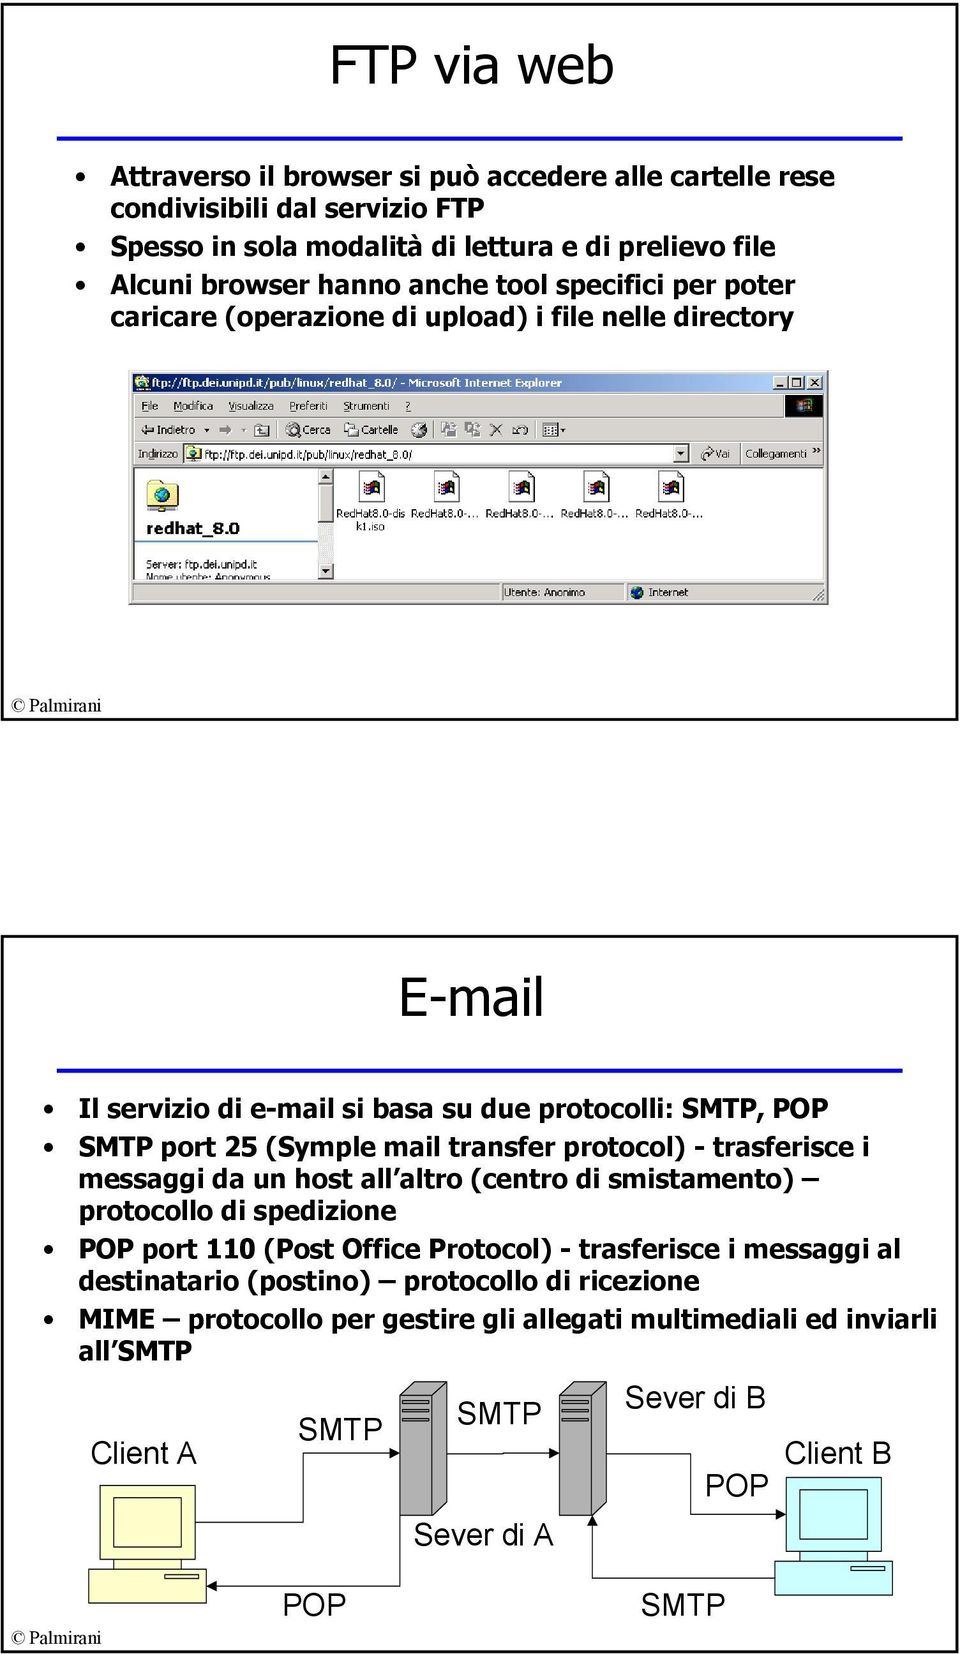 transfer protocol) - trasferisce i messaggi da un host all altro (centro di smistamento) protocollo di spedizione POP port 110 (Post Office Protocol) - trasferisce i messaggi al